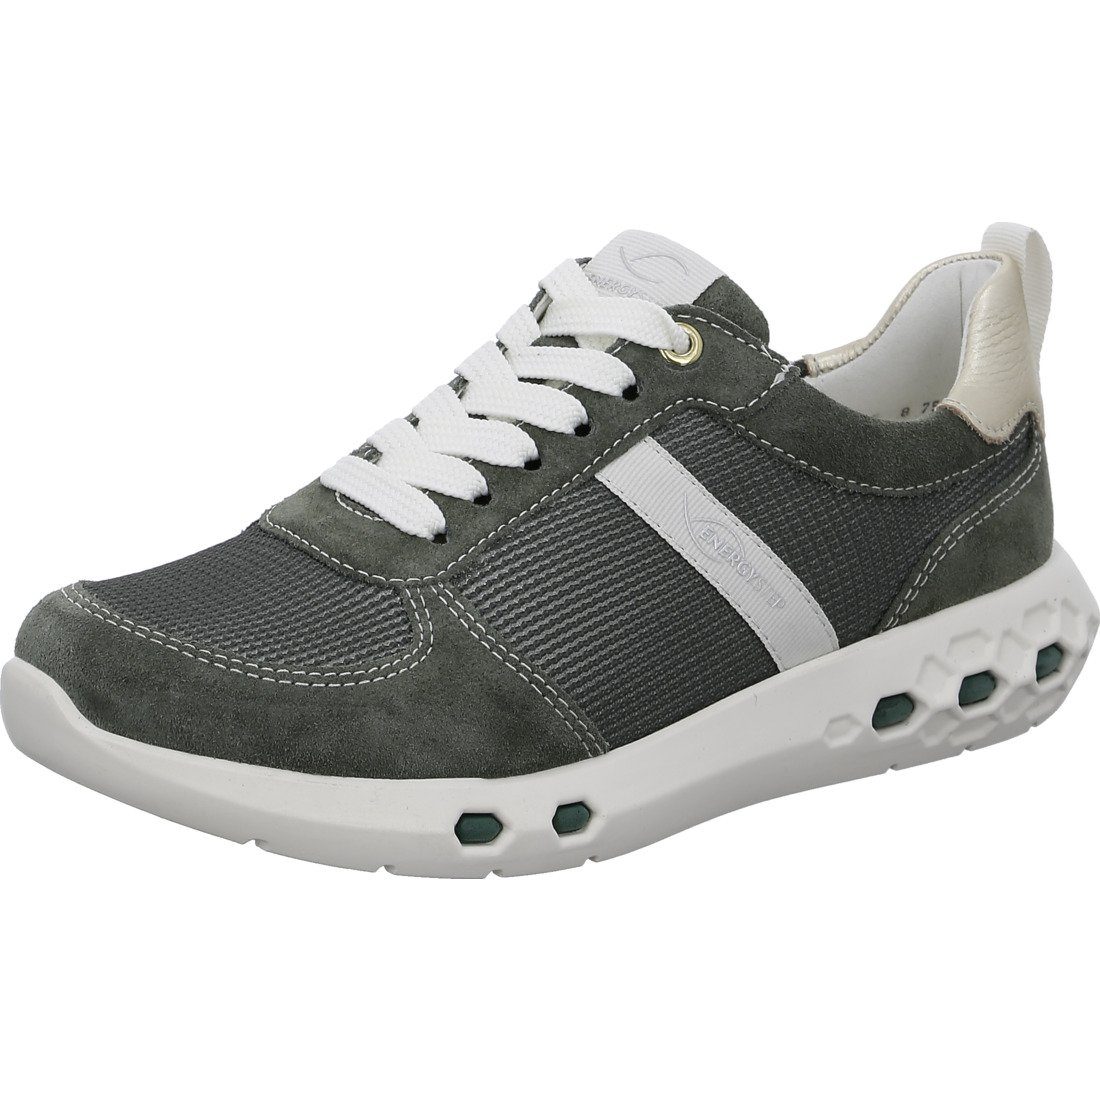 Ara Ara Schuhe, Sneaker Jumper - Materialmix Damen Sneaker grün 047857 | Schnürschuhe